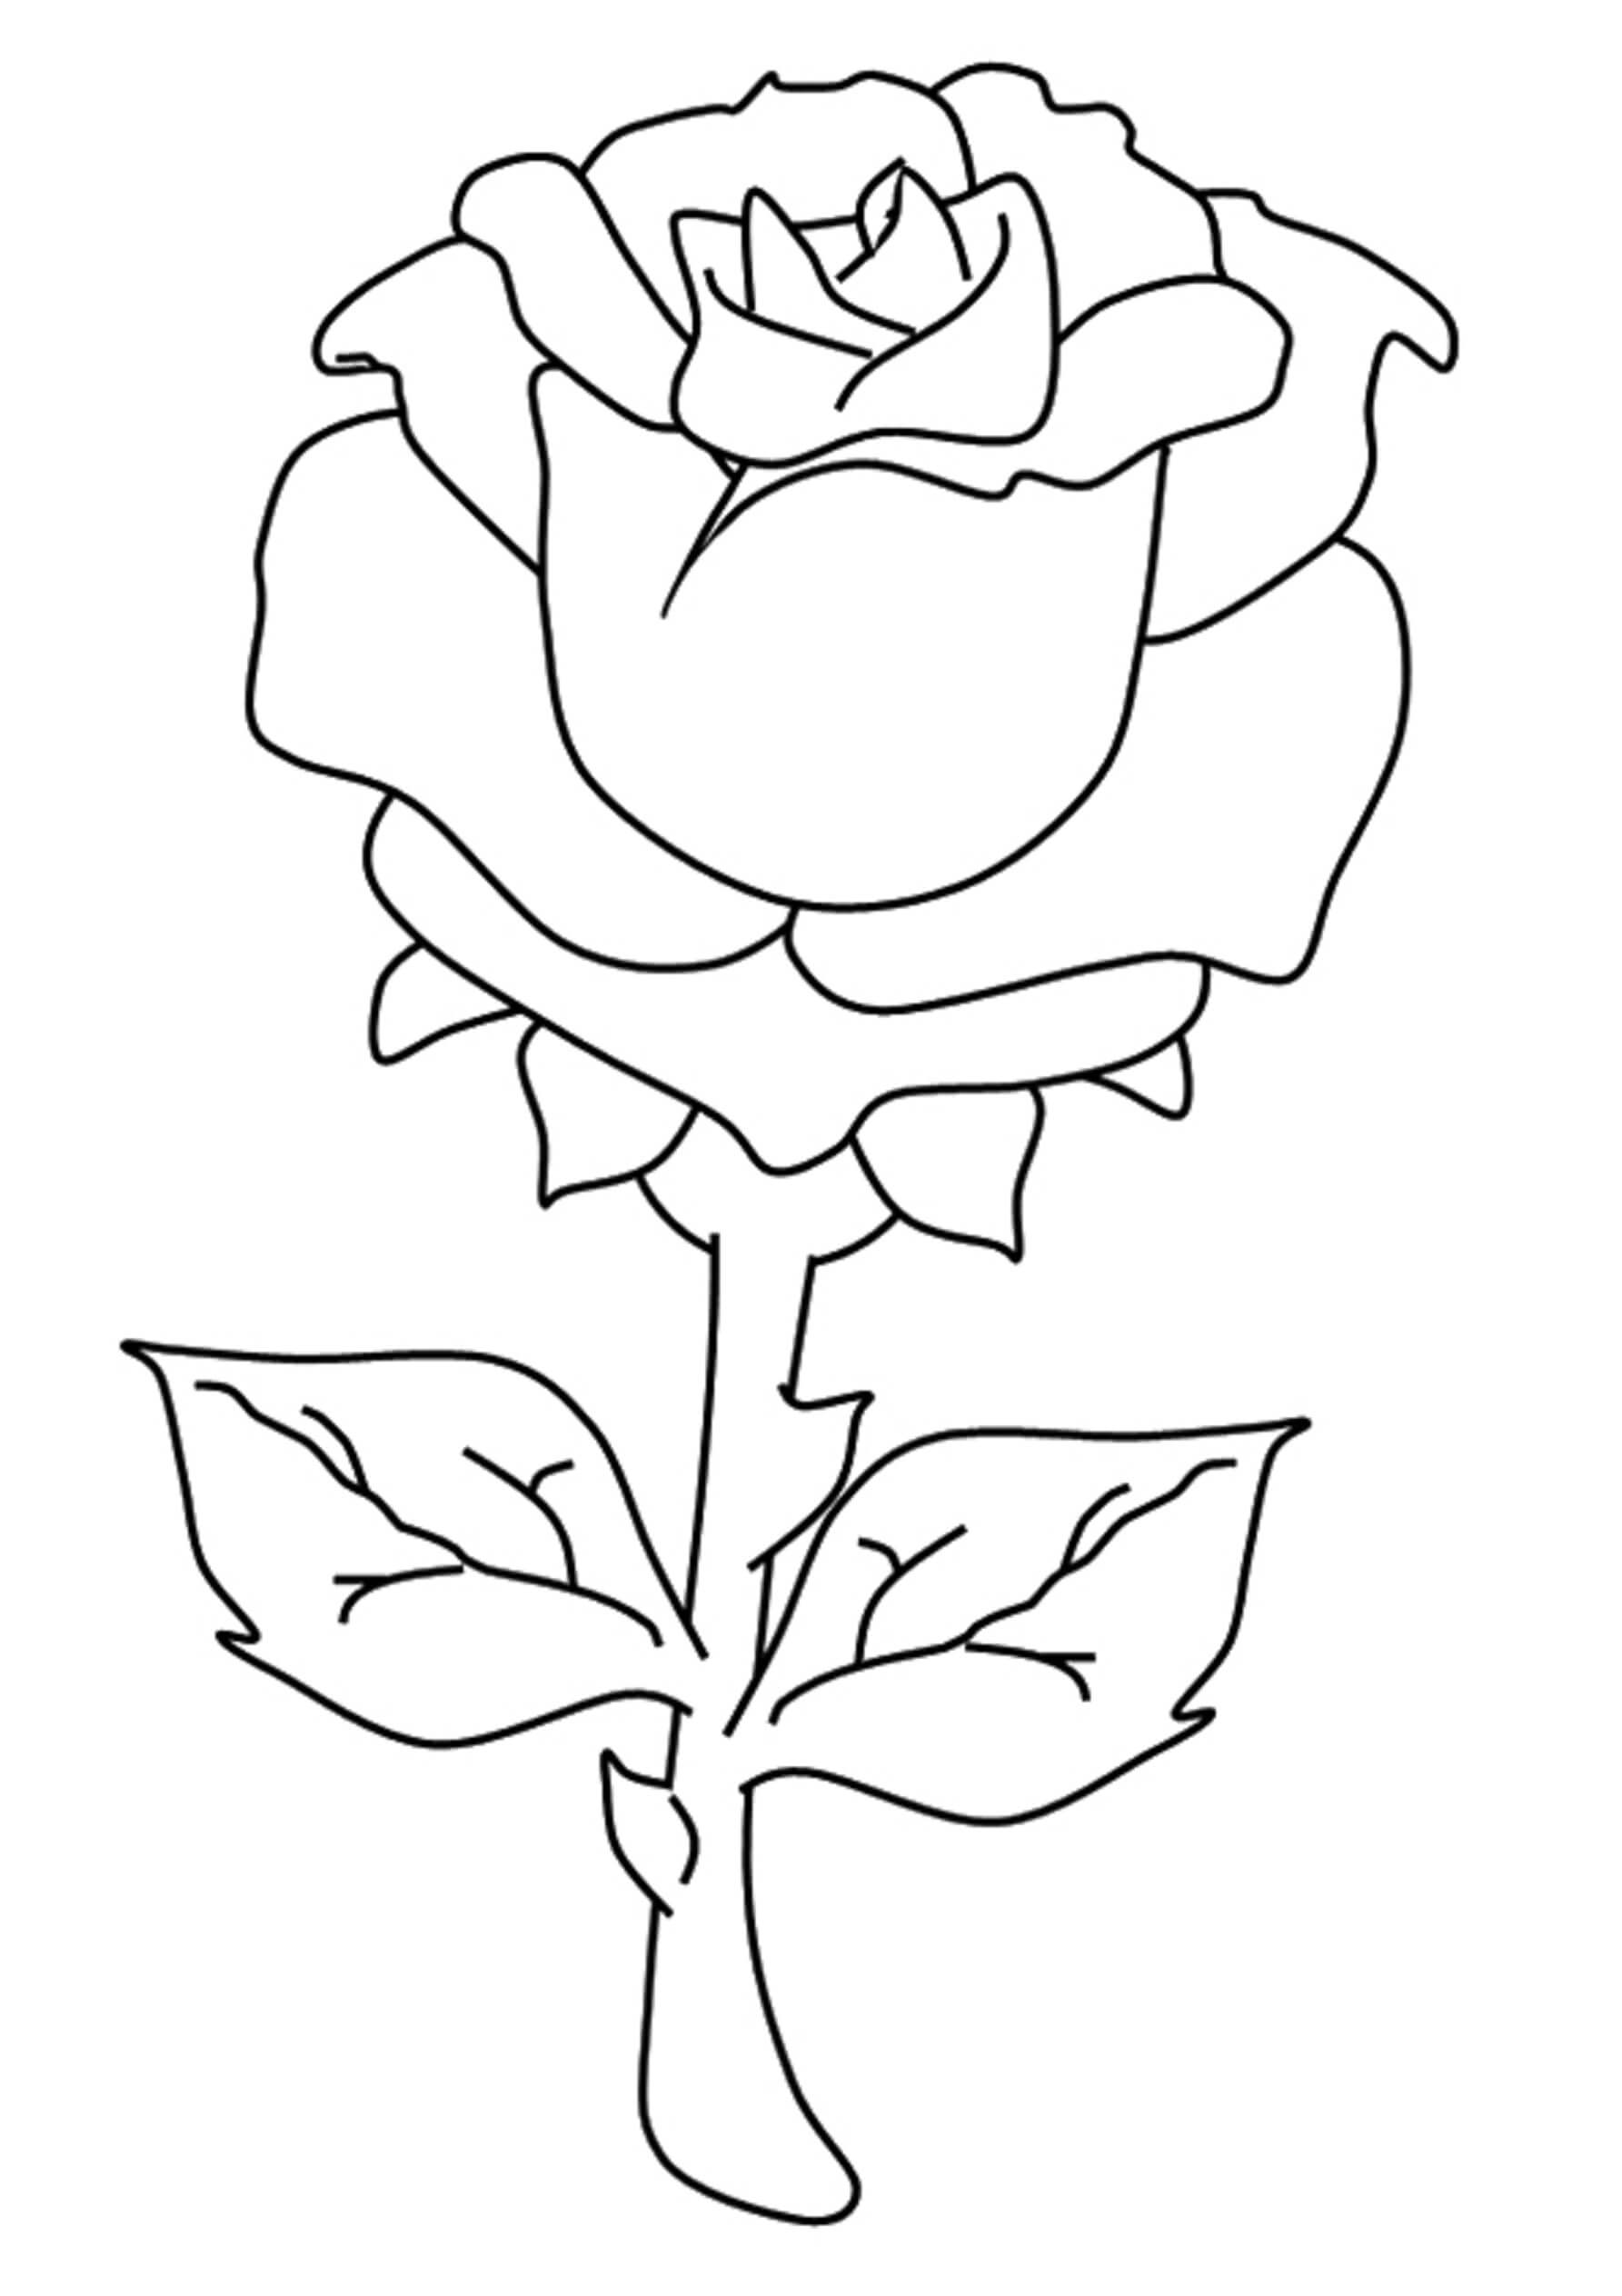 Rose Gratuite coloring page